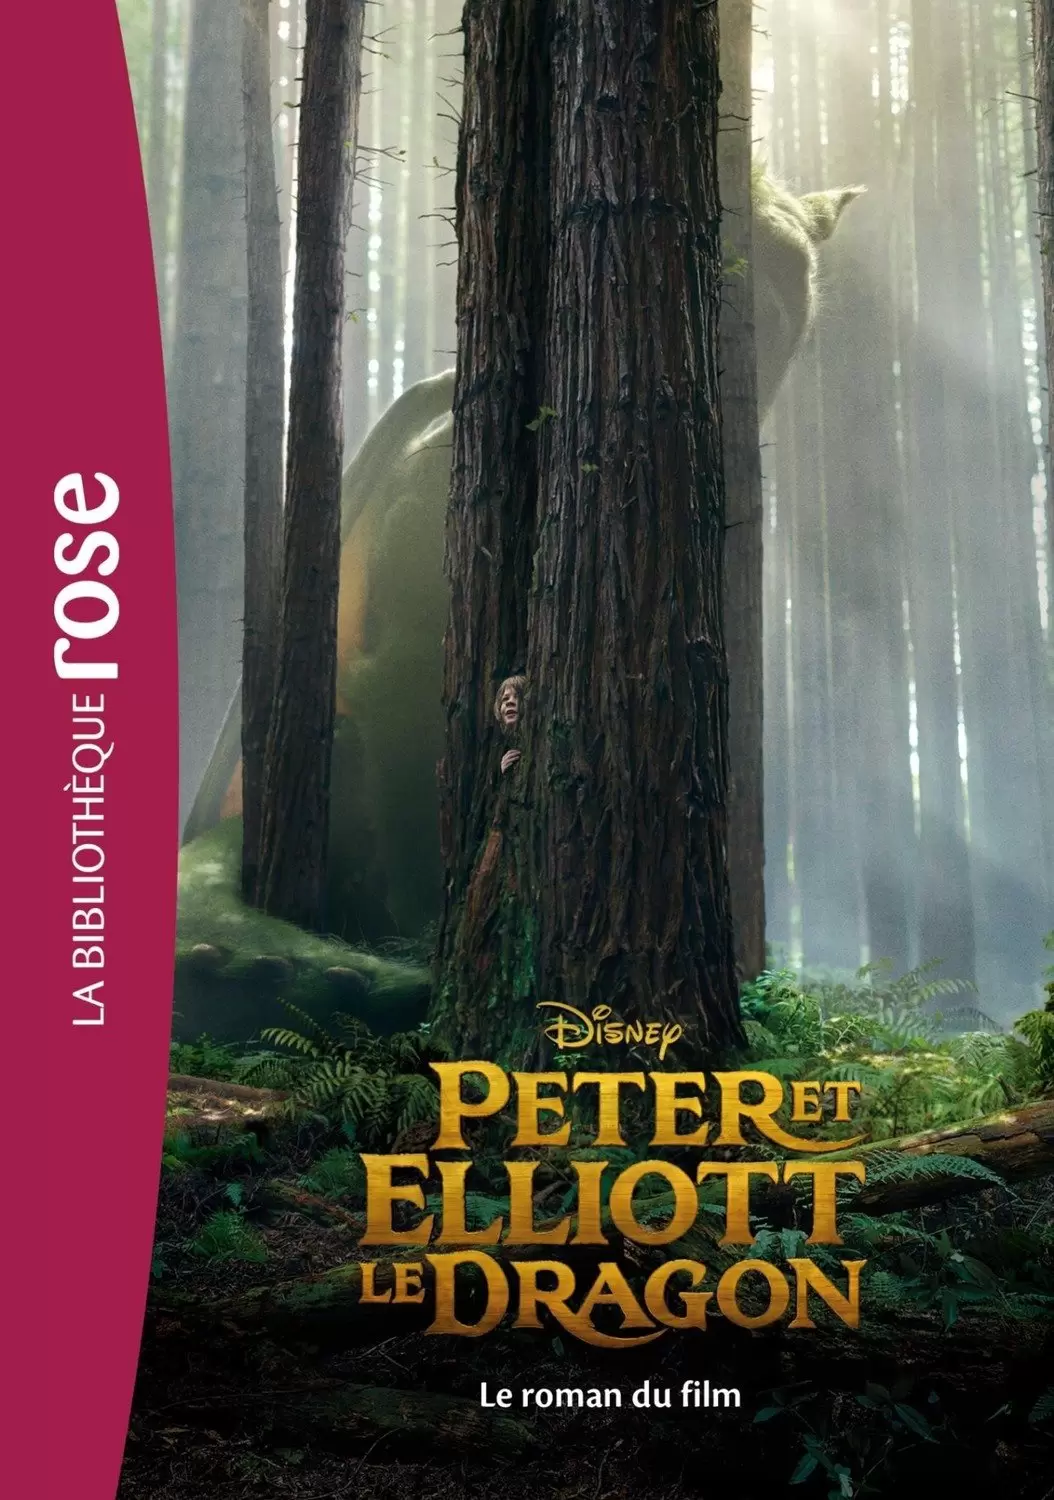 Disney - Peter et Elliott le dragon : Le roman du film